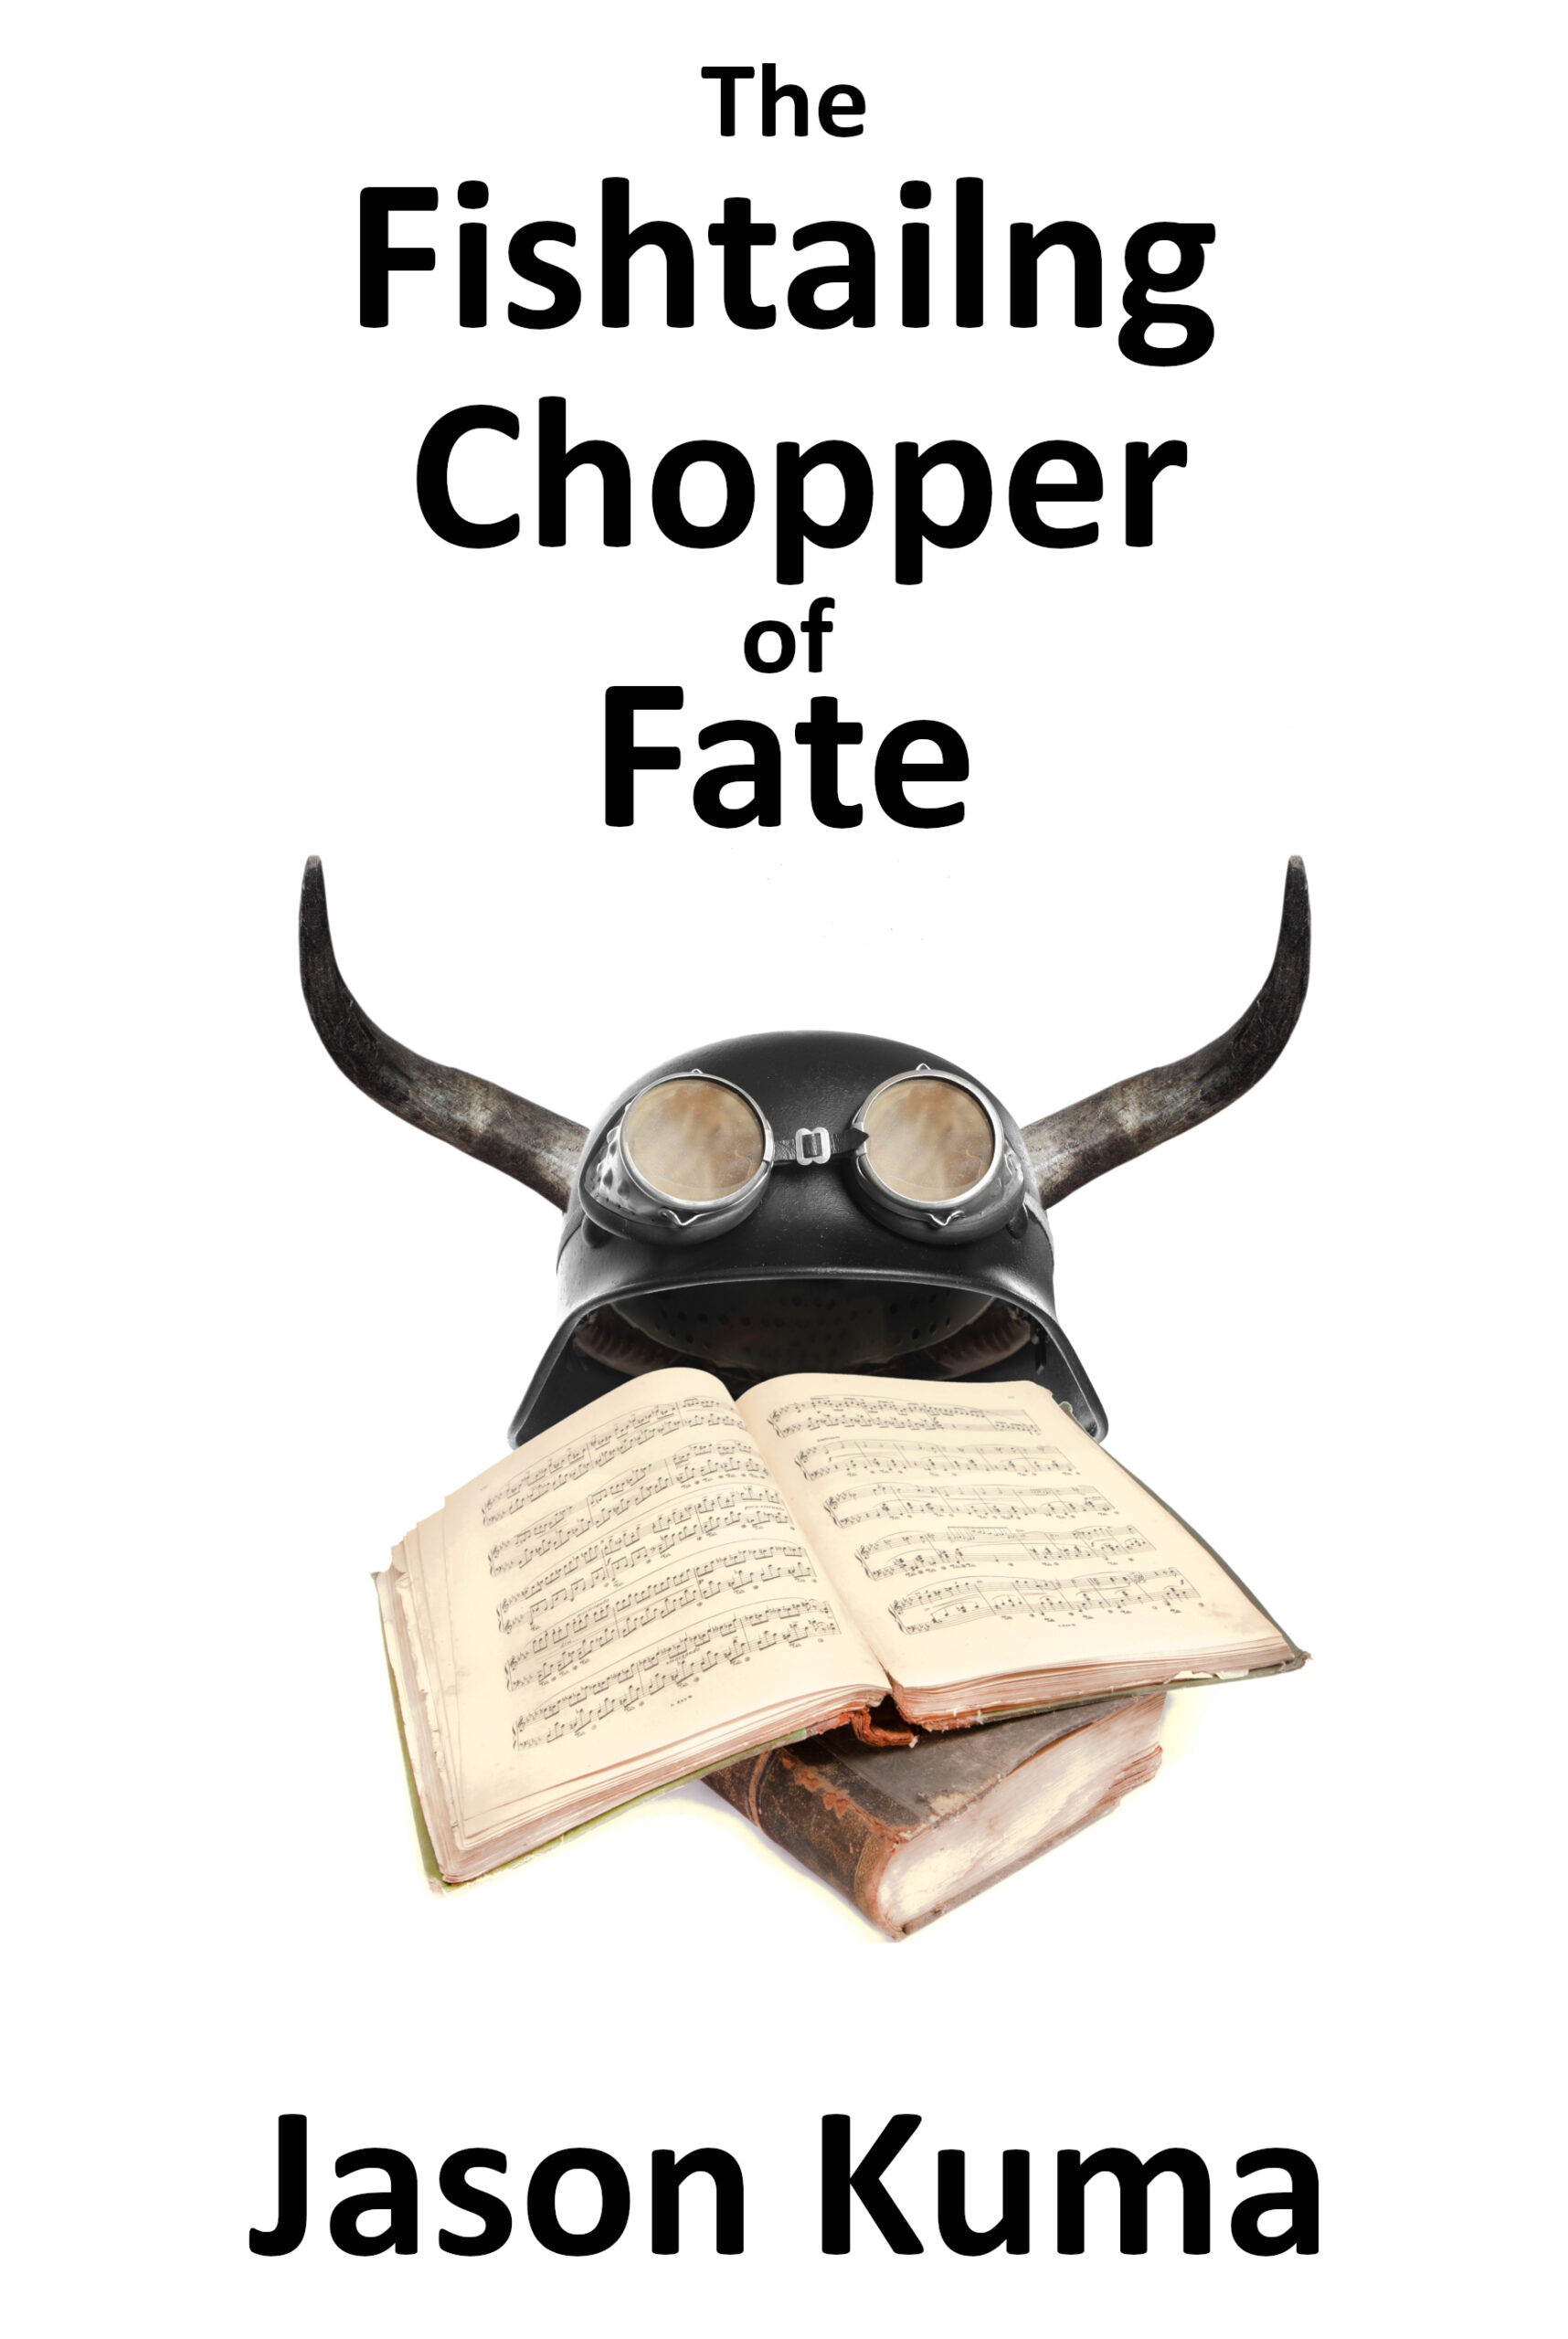 FREE: The Fishtailing Chopper of Fate by Jason Kuma